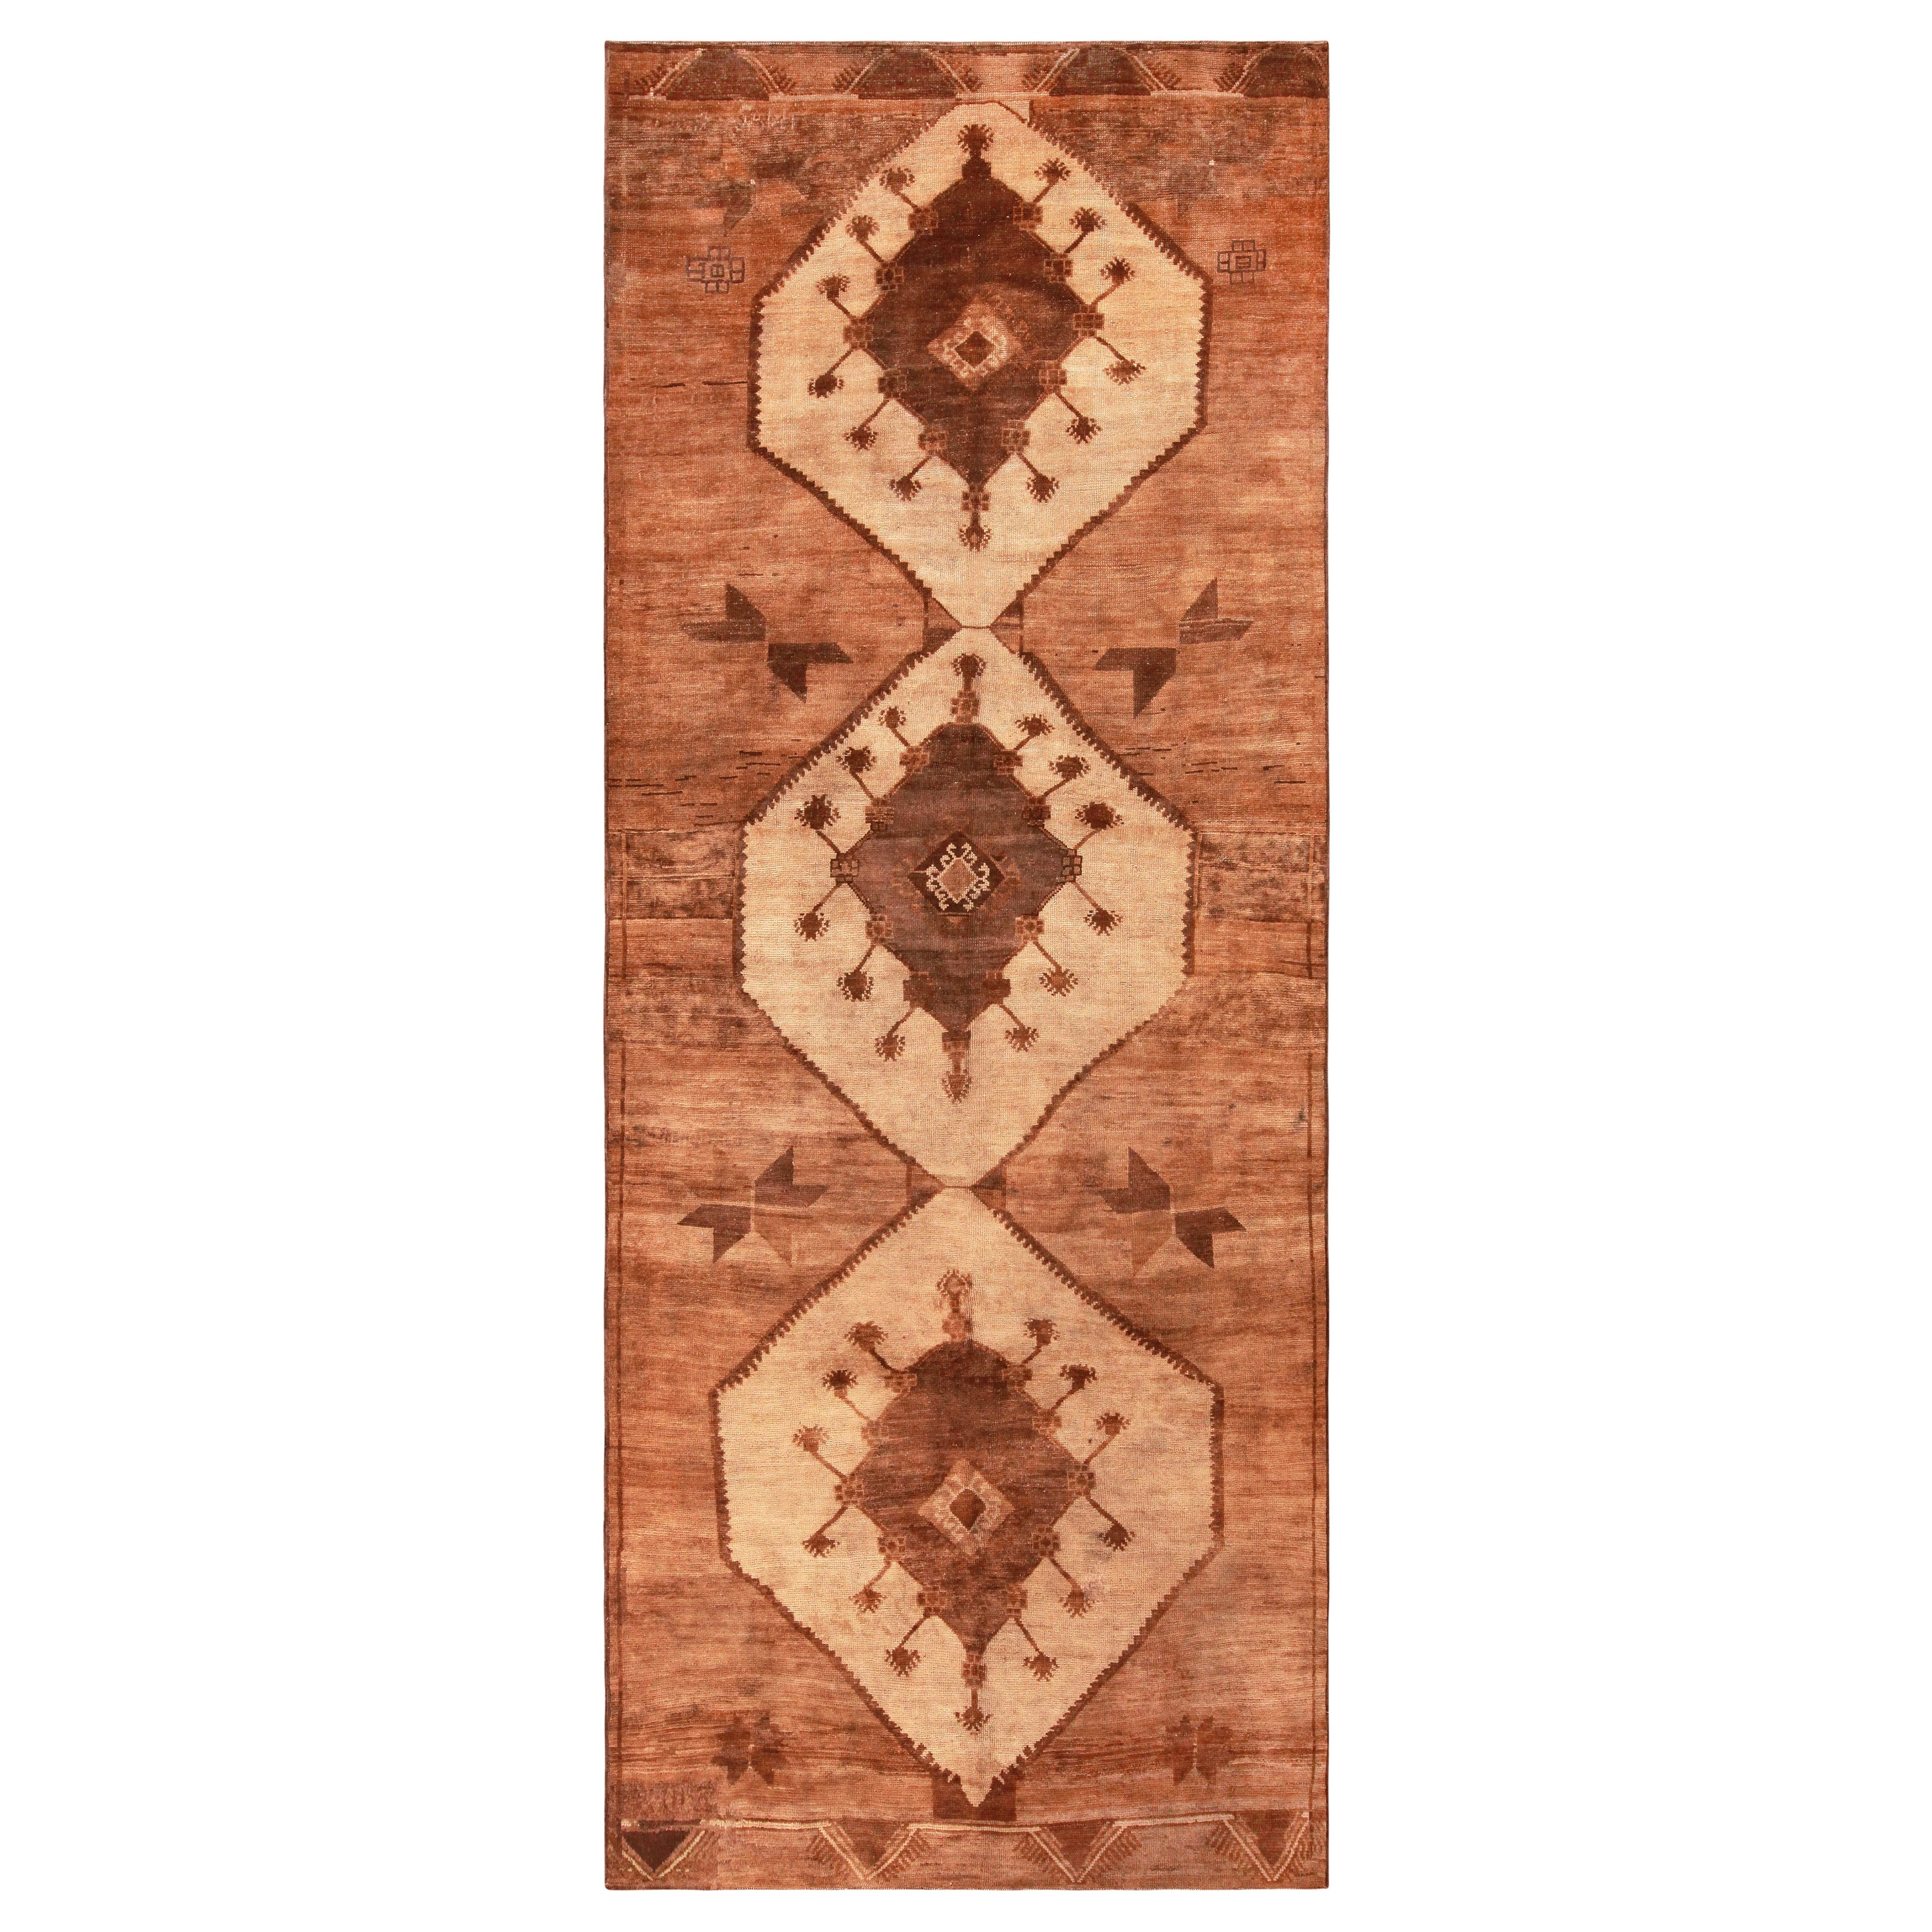 Türkischer Kars-Teppich, signiert, 6 Fuß 6 Zoll x 16 Fuß